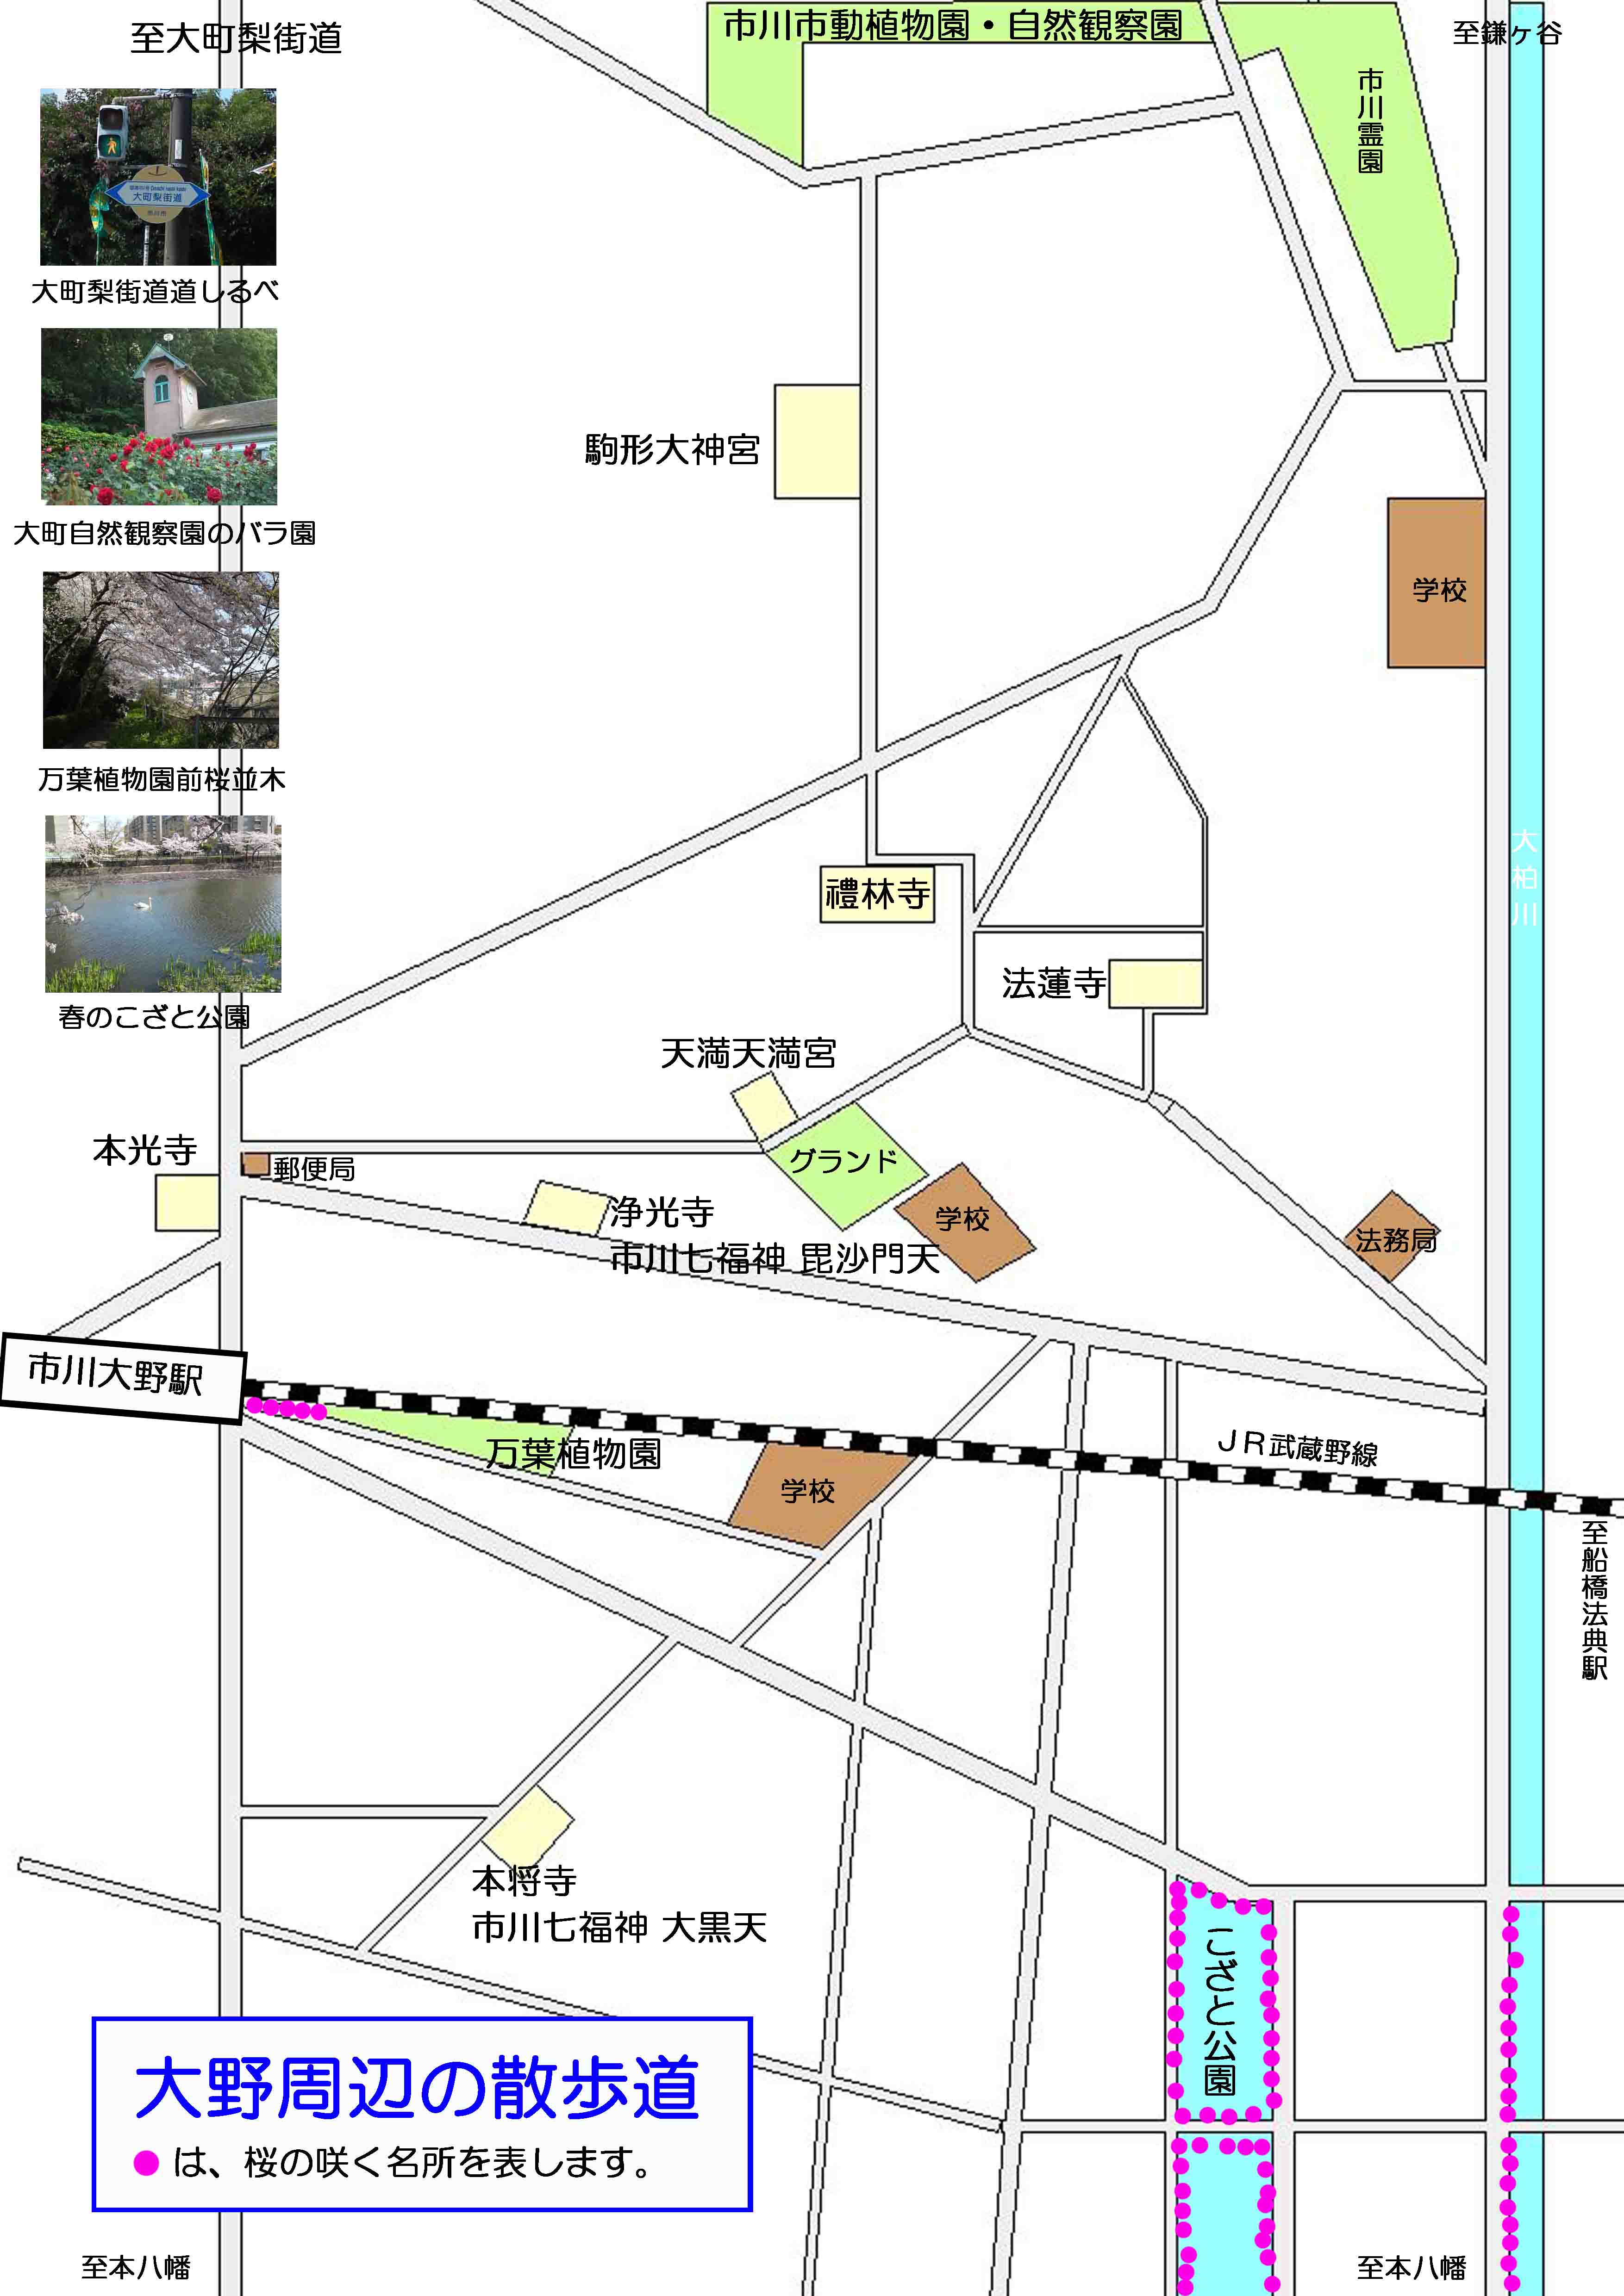 曽谷山禮林寺周辺の案内図